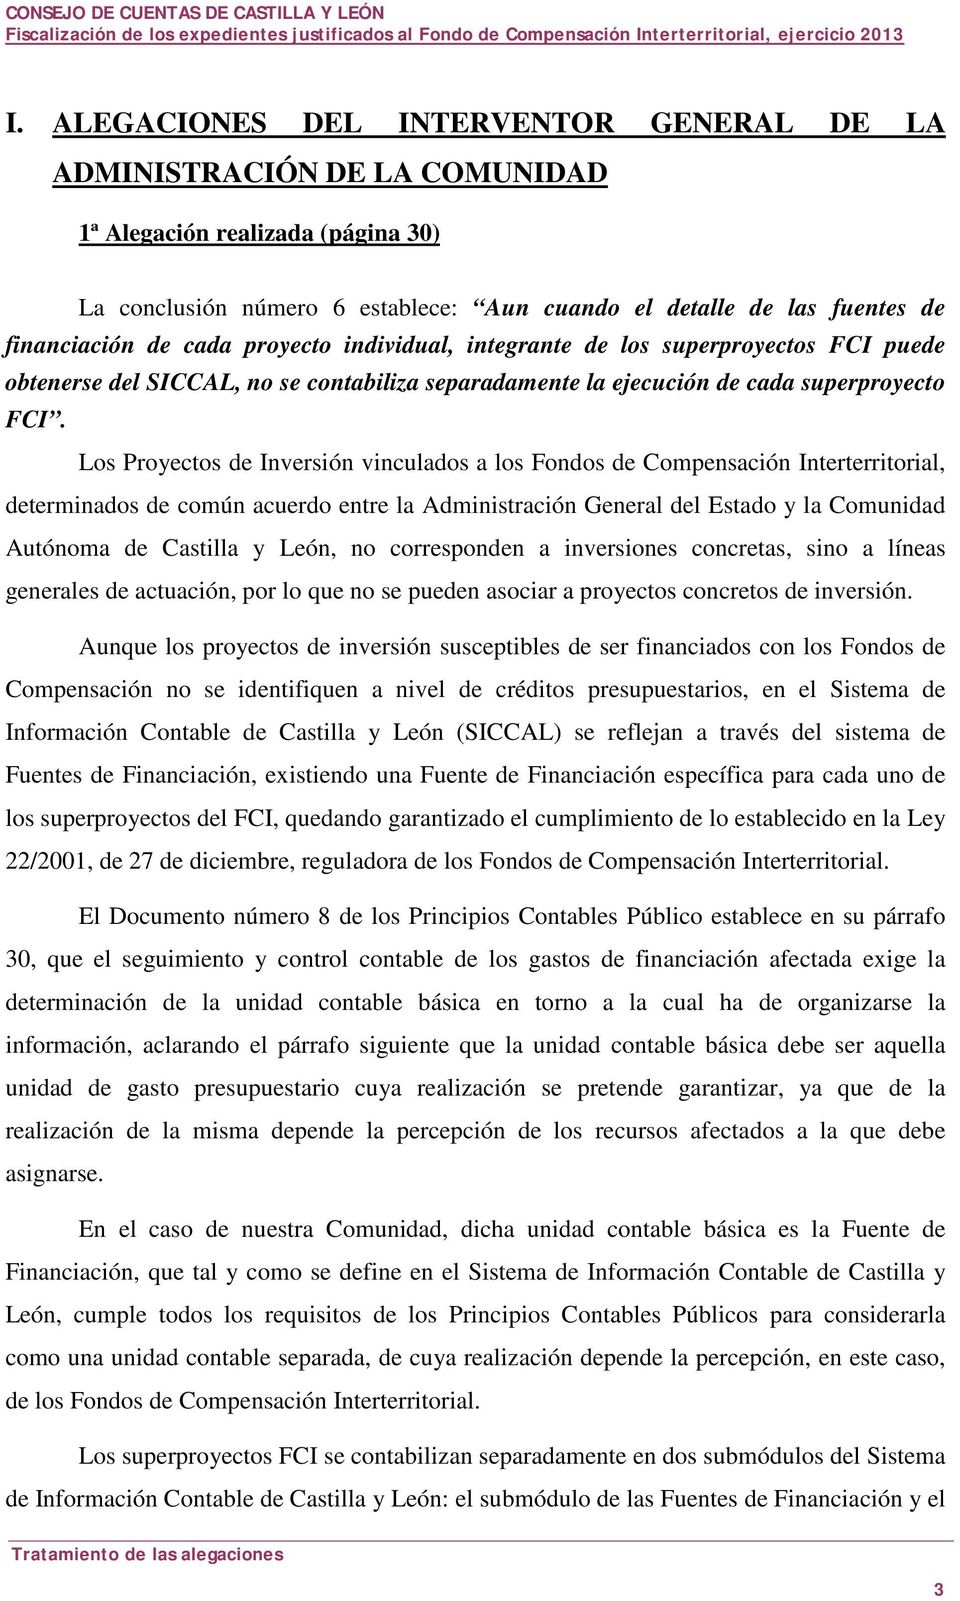 Los Proyectos de Inversión vinculados a los Fondos de Compensación Interterritorial, determinados de común acuerdo entre la Administración General del Estado y la Comunidad Autónoma de Castilla y